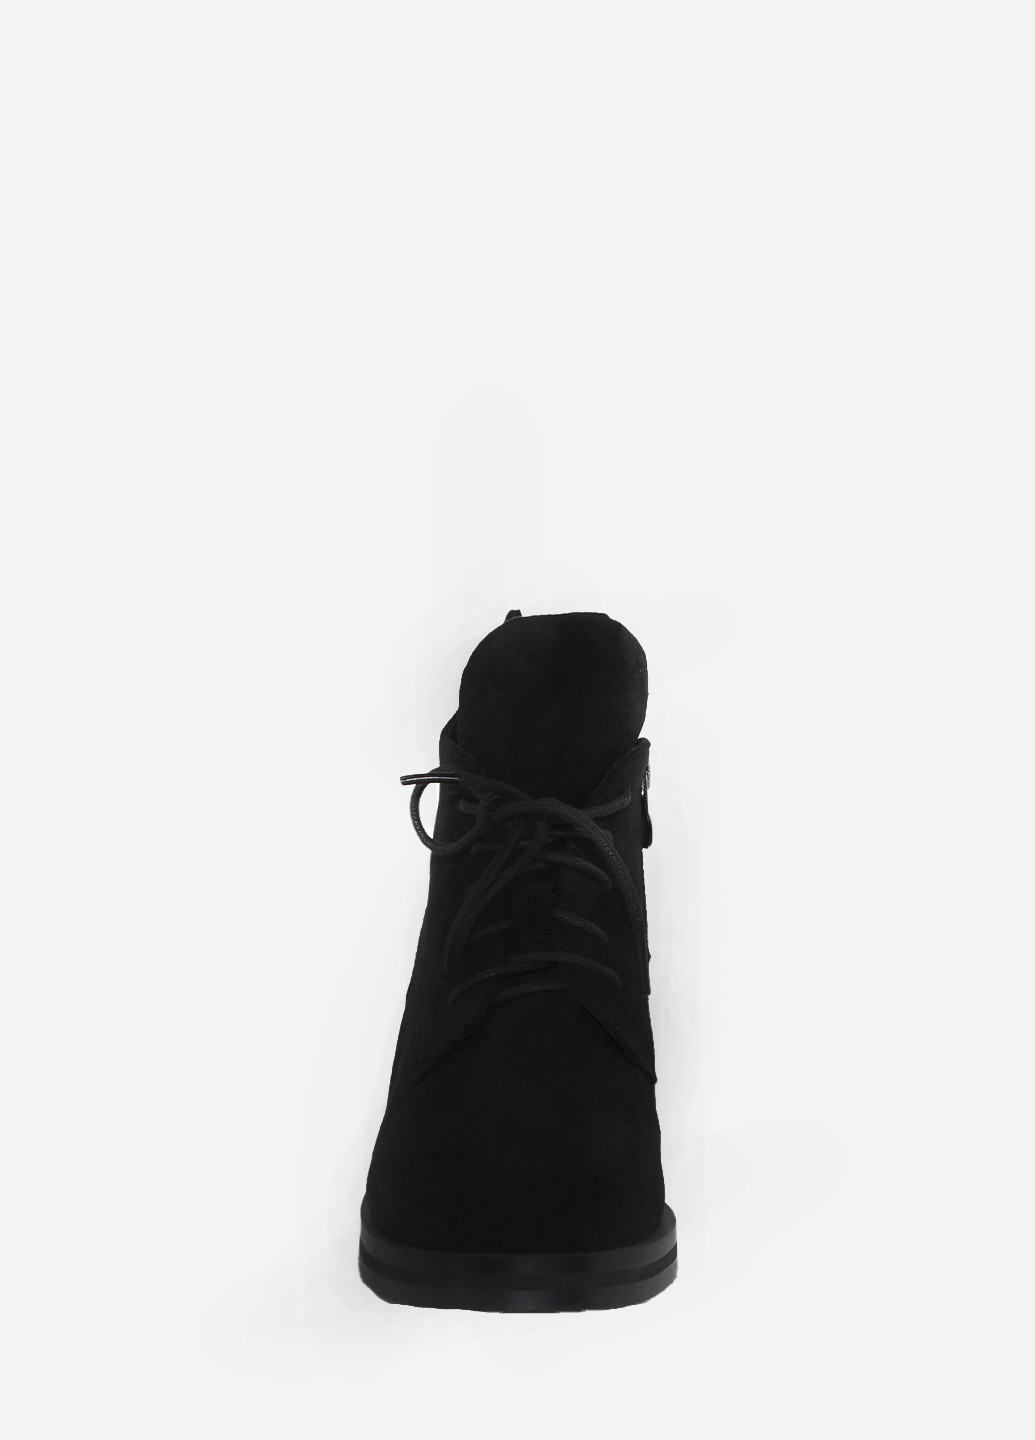 Осенние ботинки rr3867-h1711 black Rusi Moni из искусственной замши